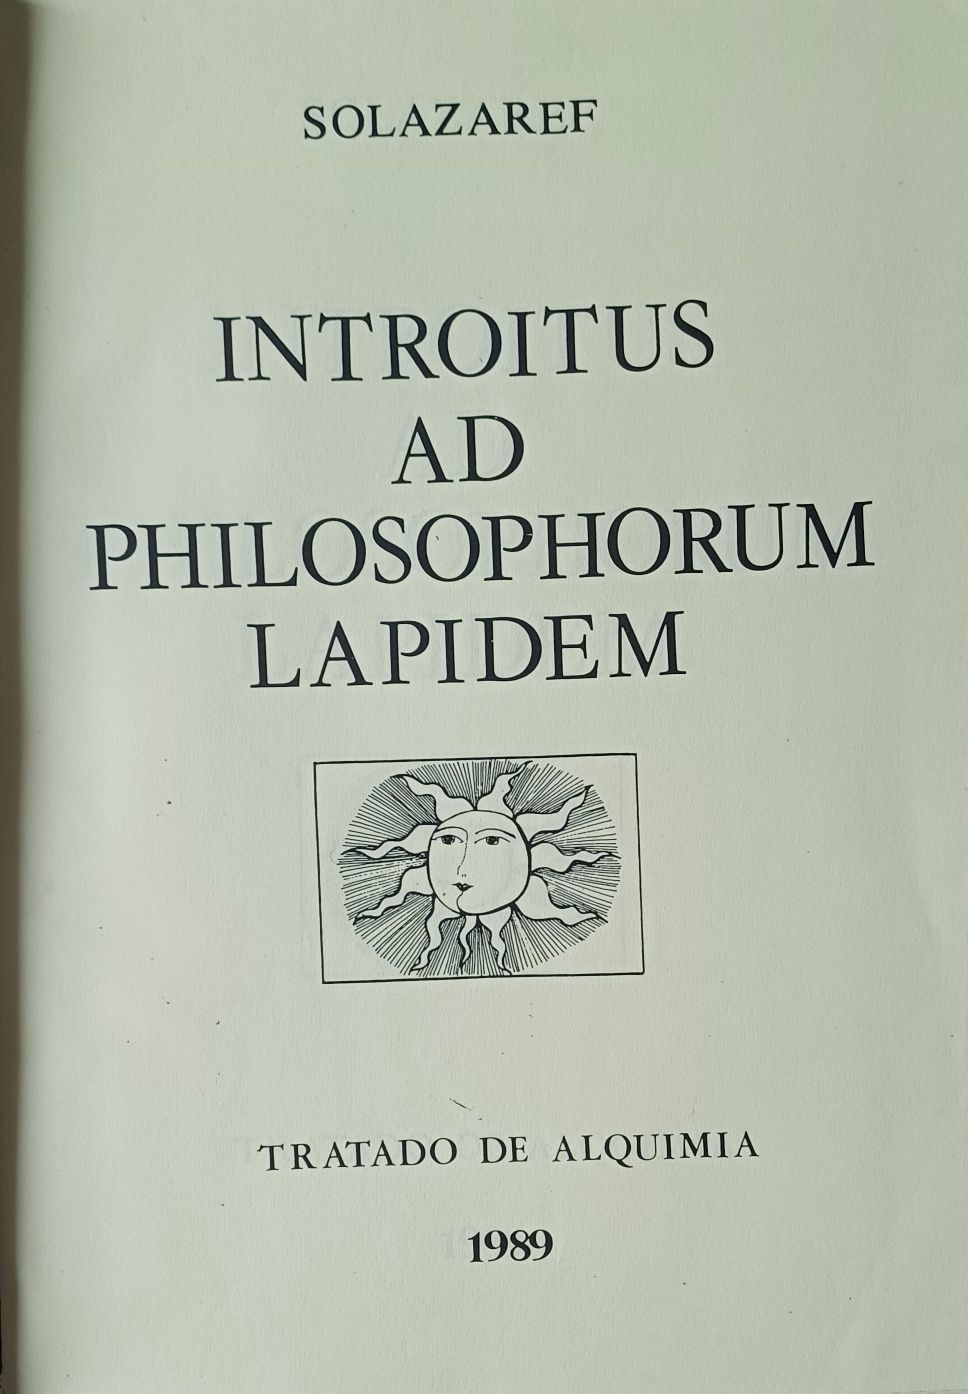 Alquimia Tratado Introitus ad Philosophorum Lapidem 1989e